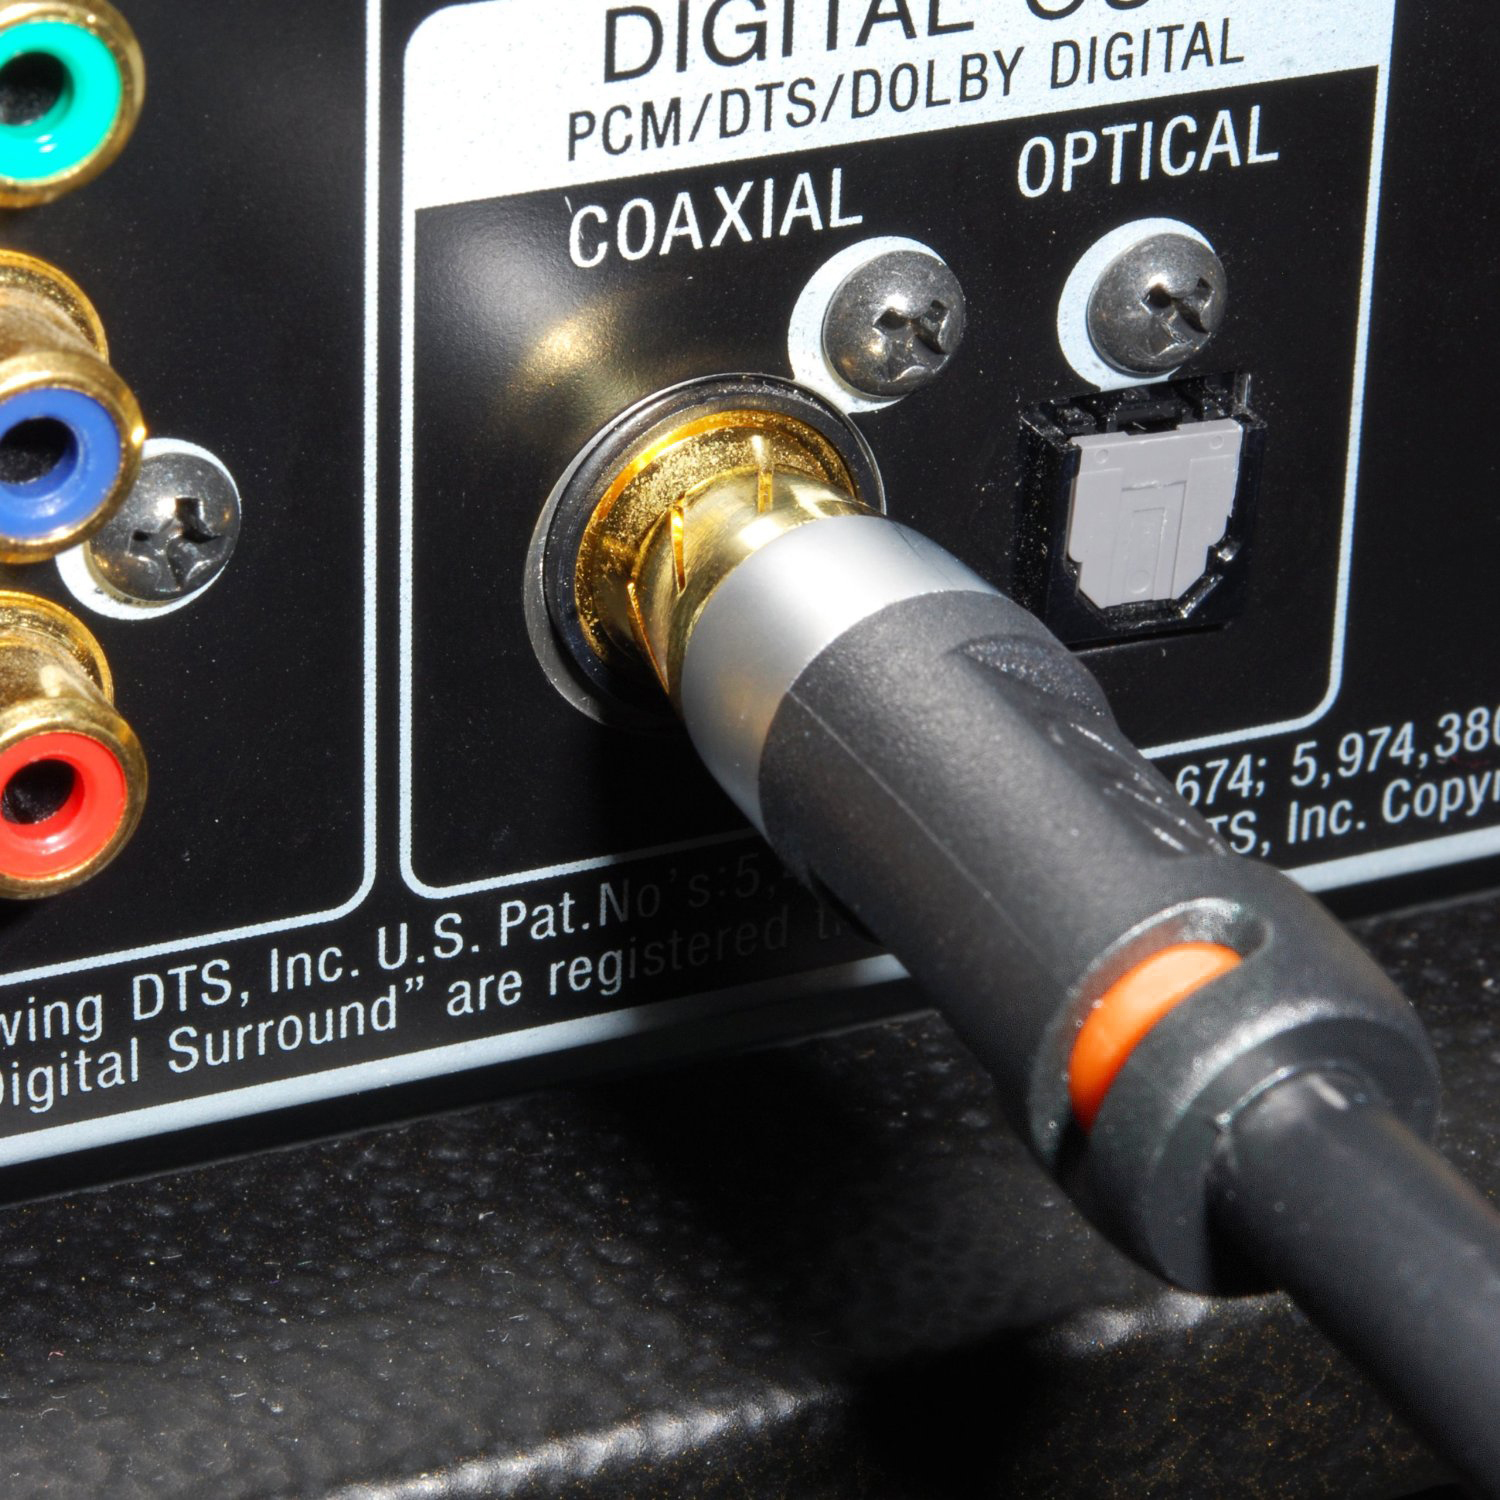 Mediabridge serie Ultra Cable coaxial para audio digital, con protección  doble, con conectores RCA a RCA, bañados en oro, de calidad profesional.